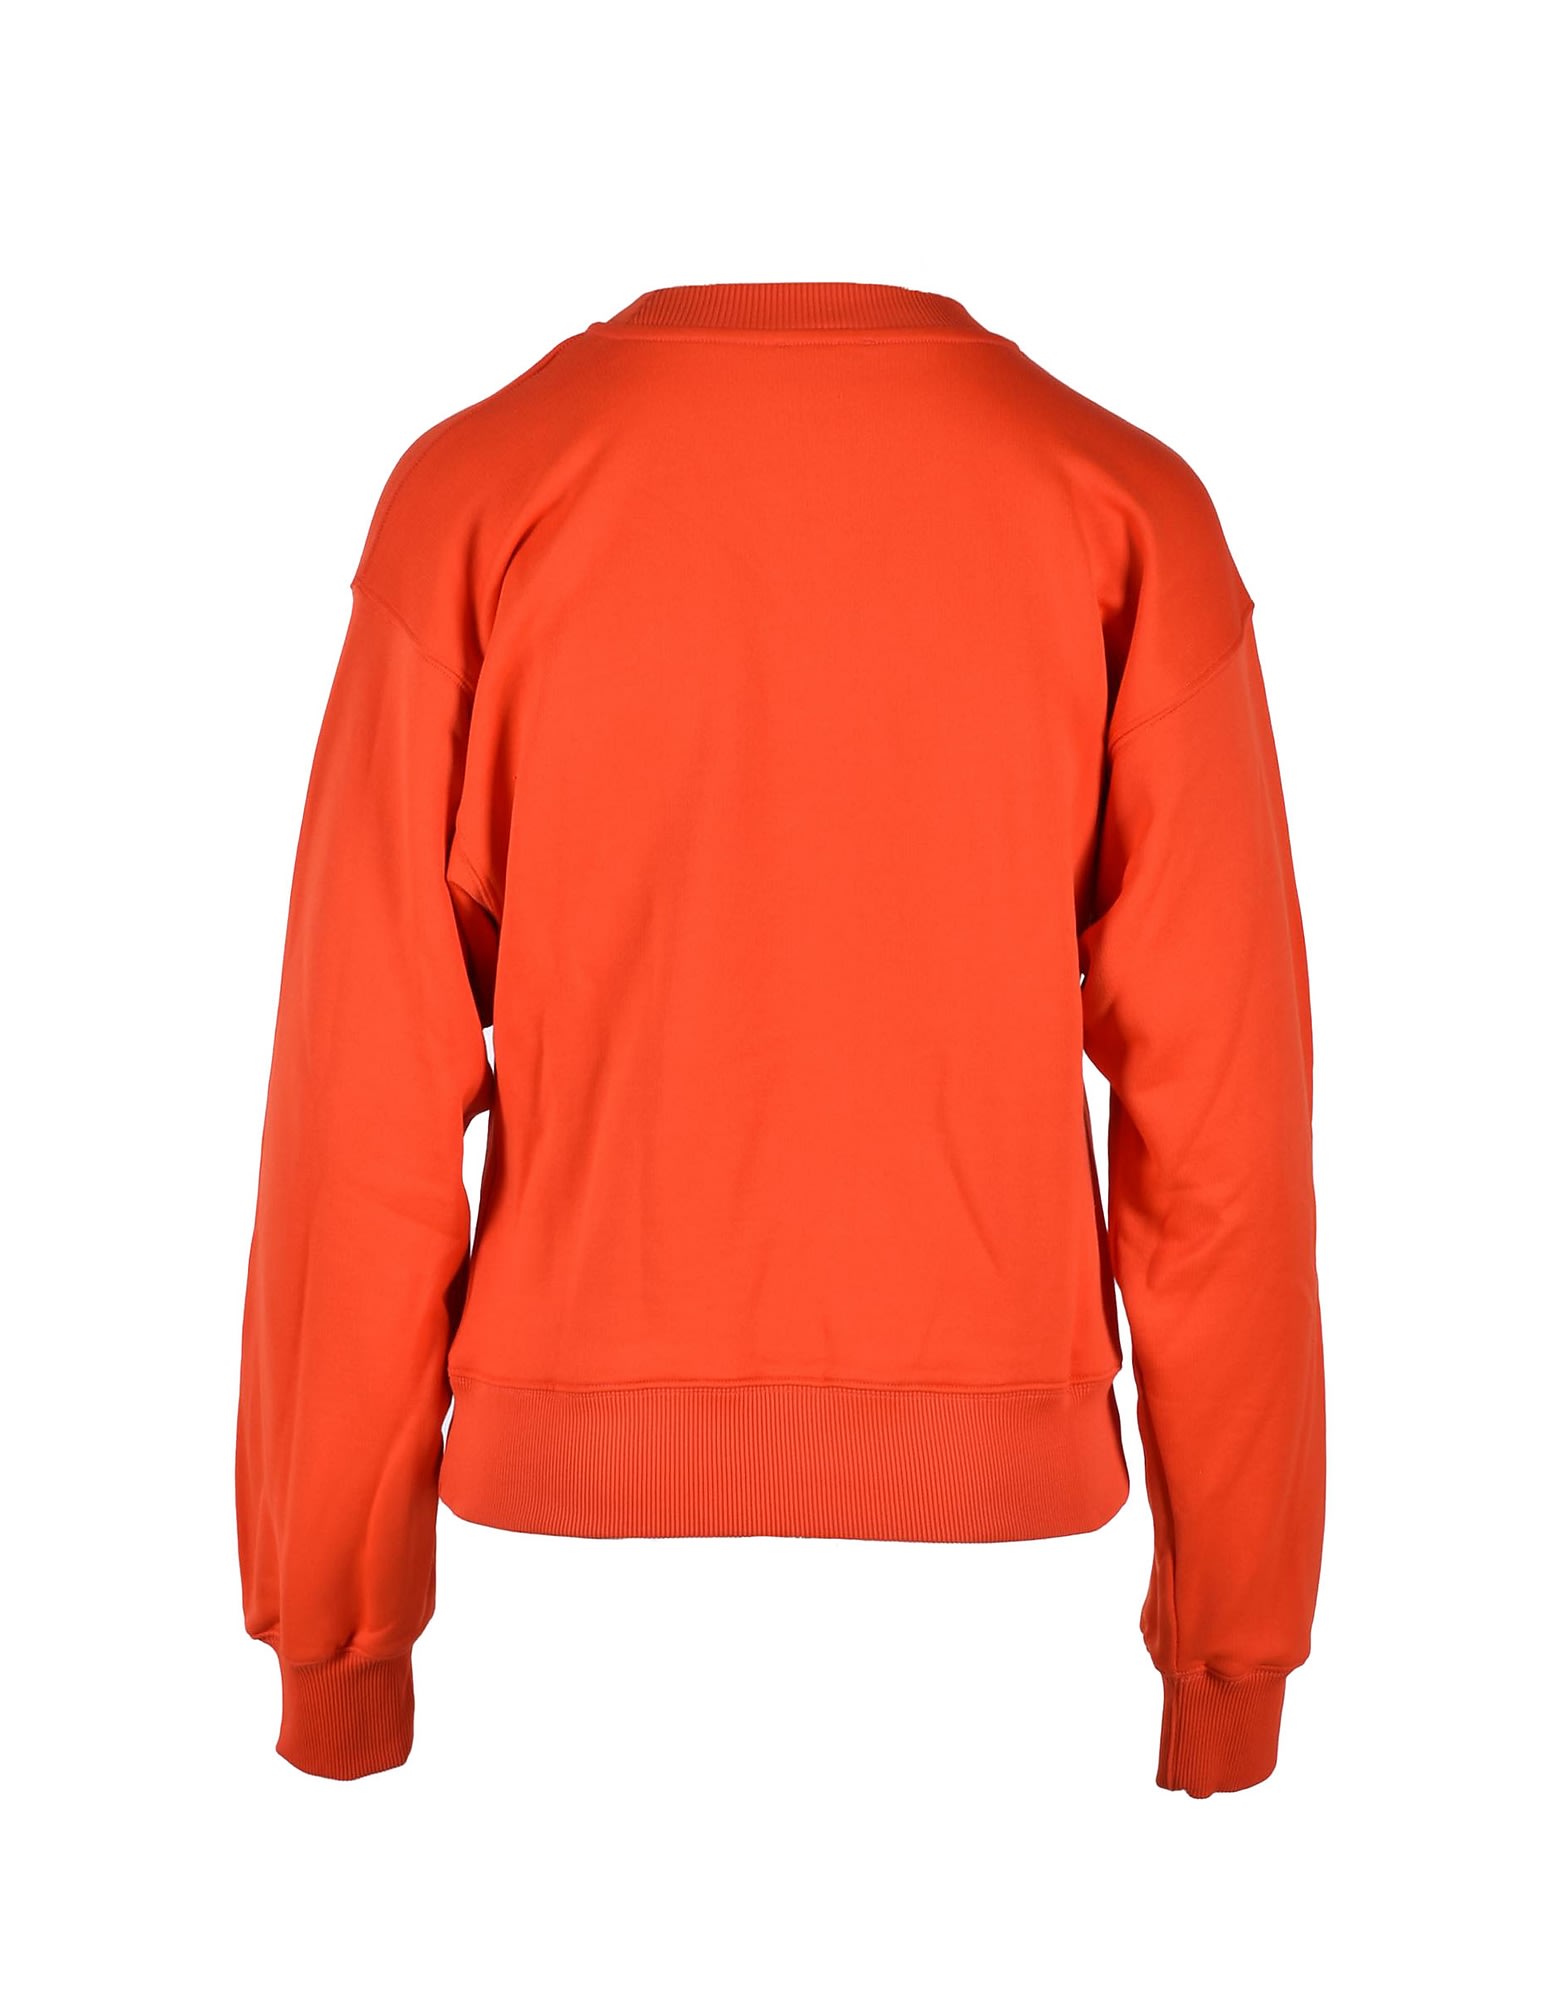 Diesel Womens Orange Sweatshirt